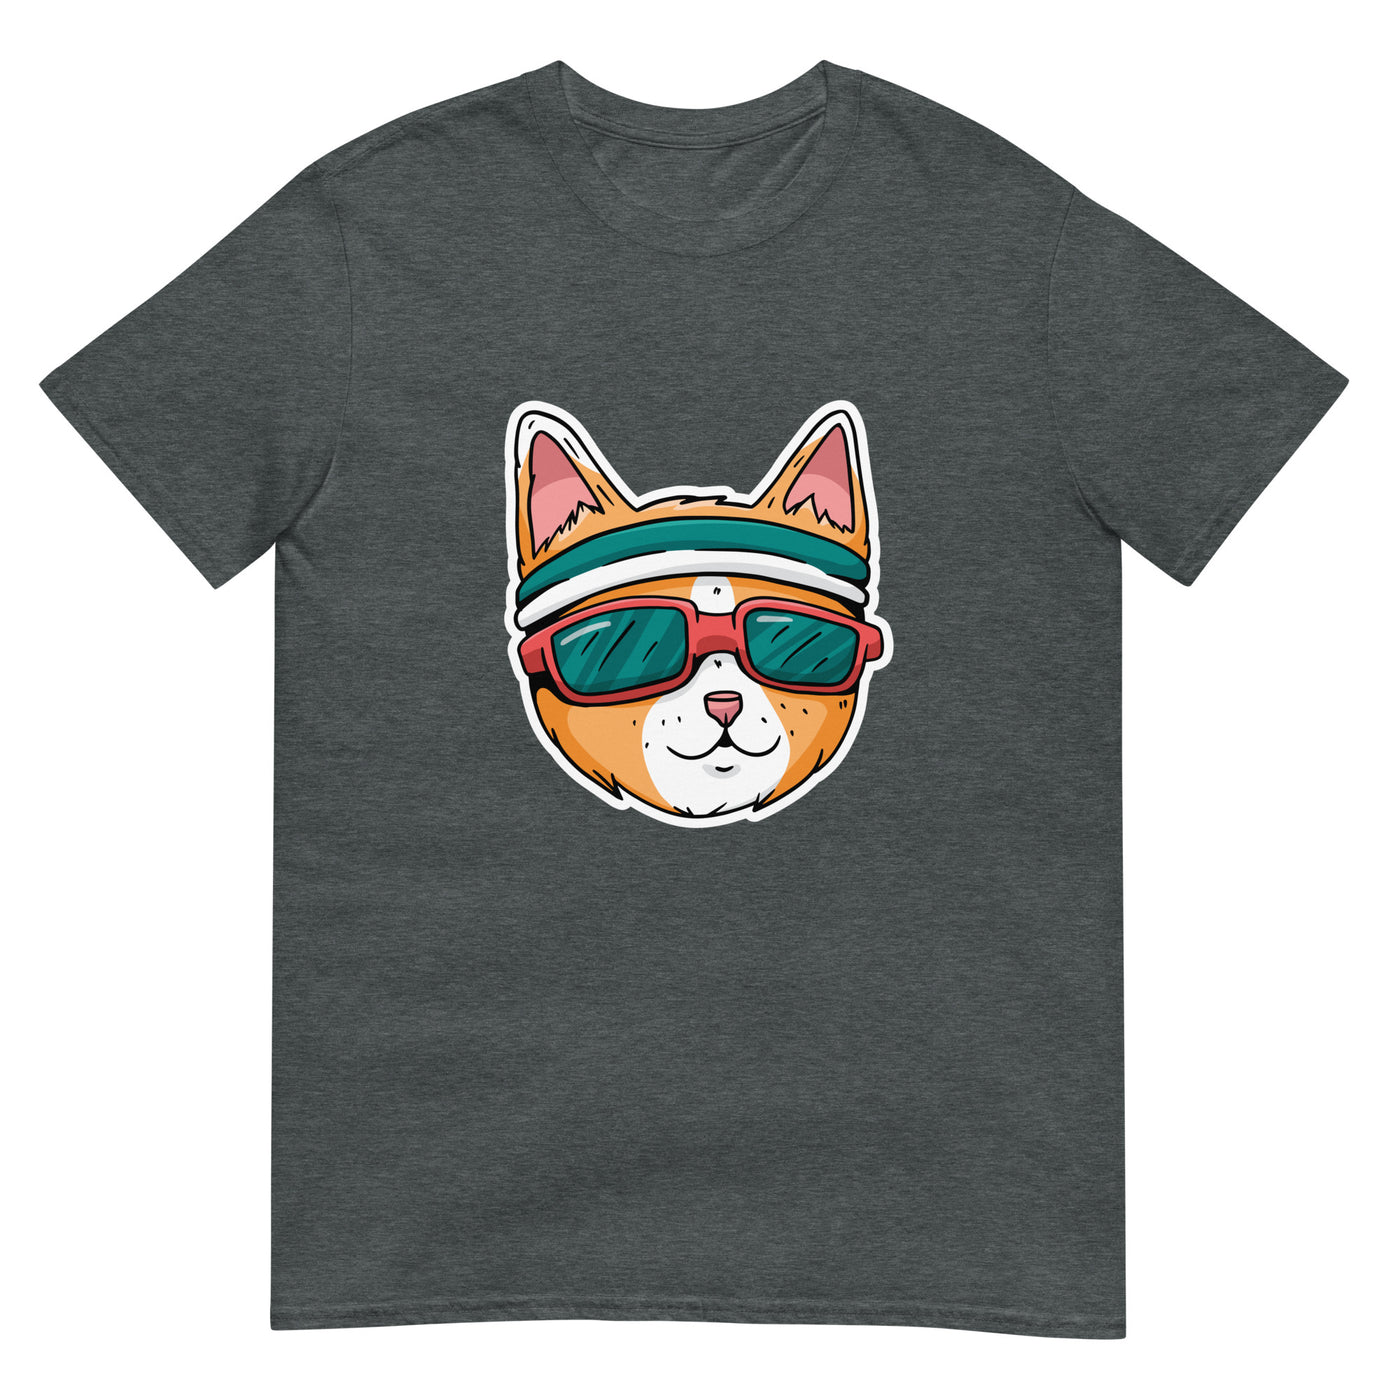 Katze mit Sonnenbrille und Band - Laufend - Herren T-Shirt Other_Niches xxx yyy zzz Dark Heather